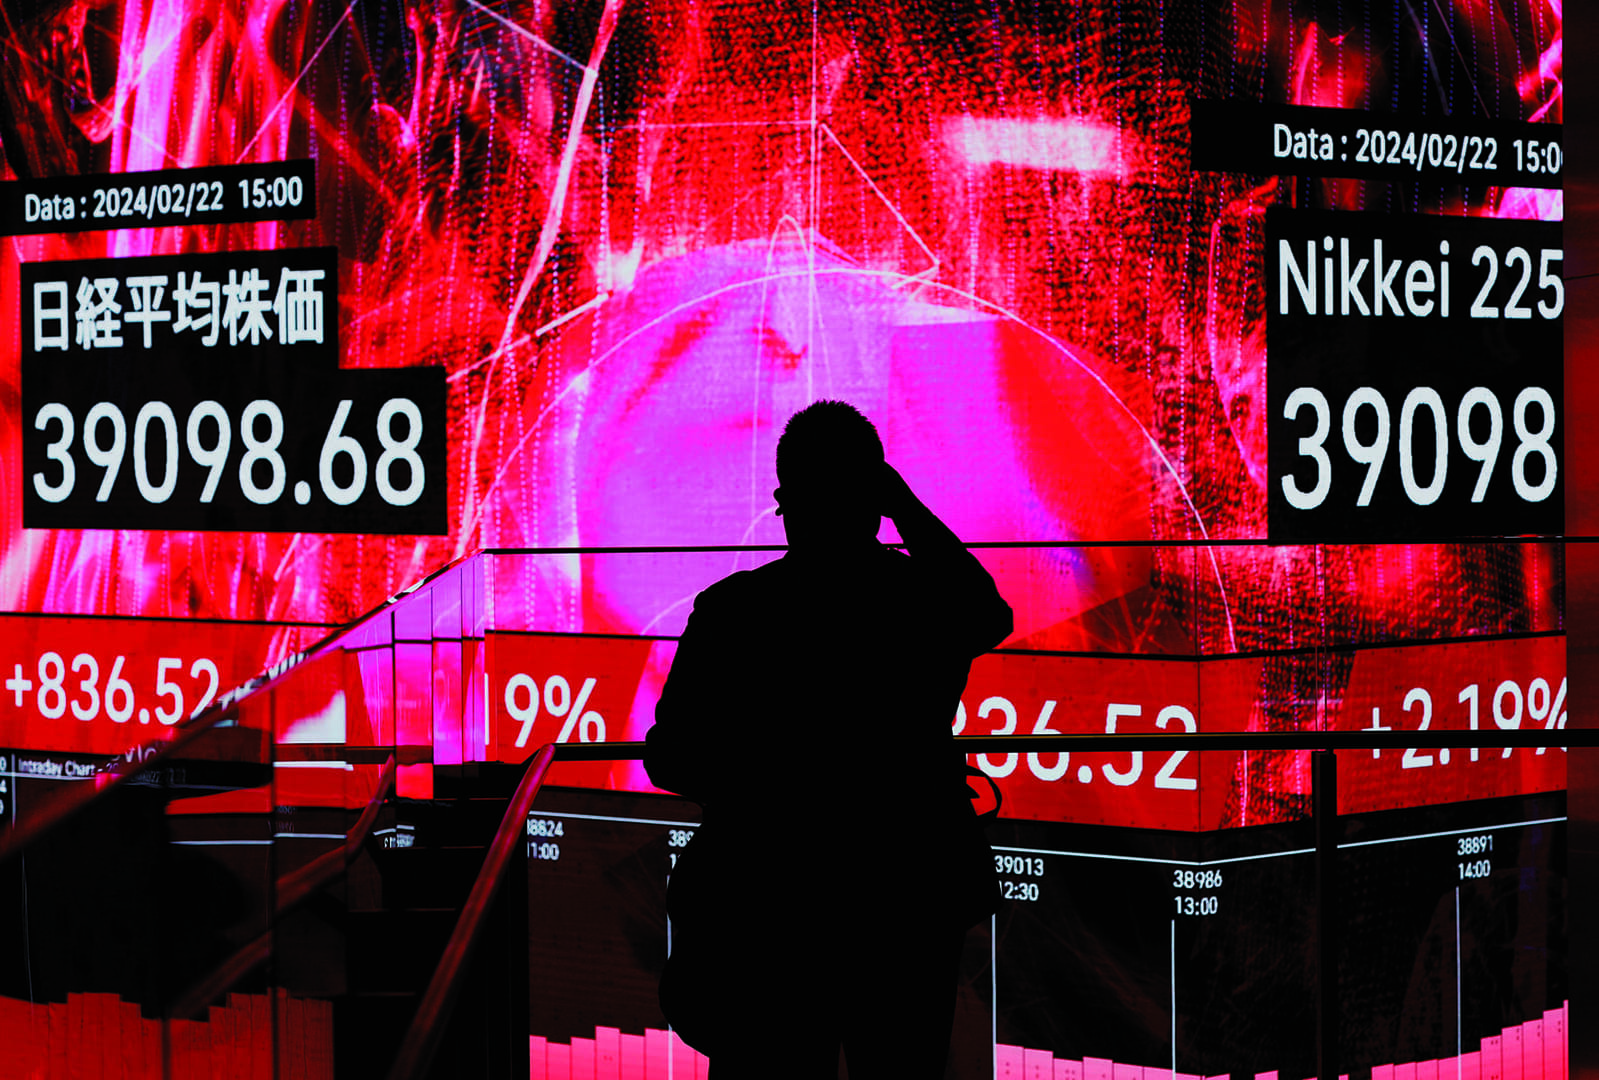 株価は最高値更新なのに、日本人の気分は暗すぎる...このギャップをどう考える？